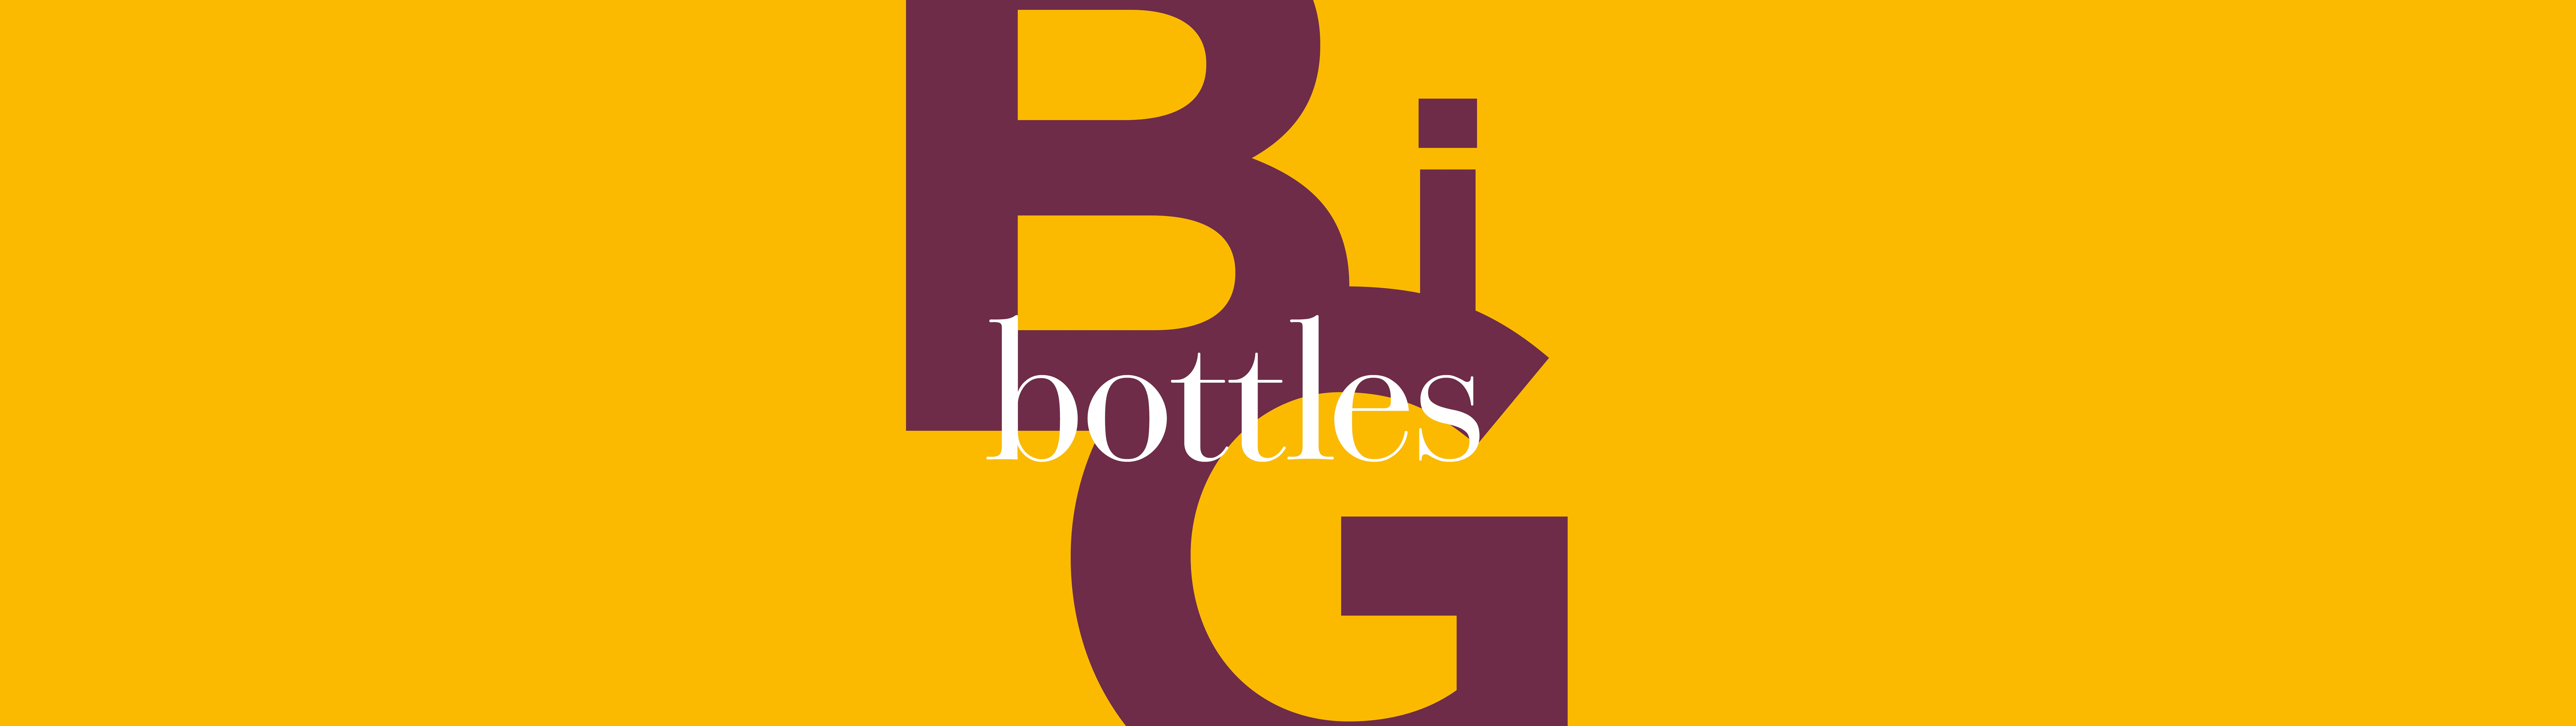 Schriftzug «Big bottles»